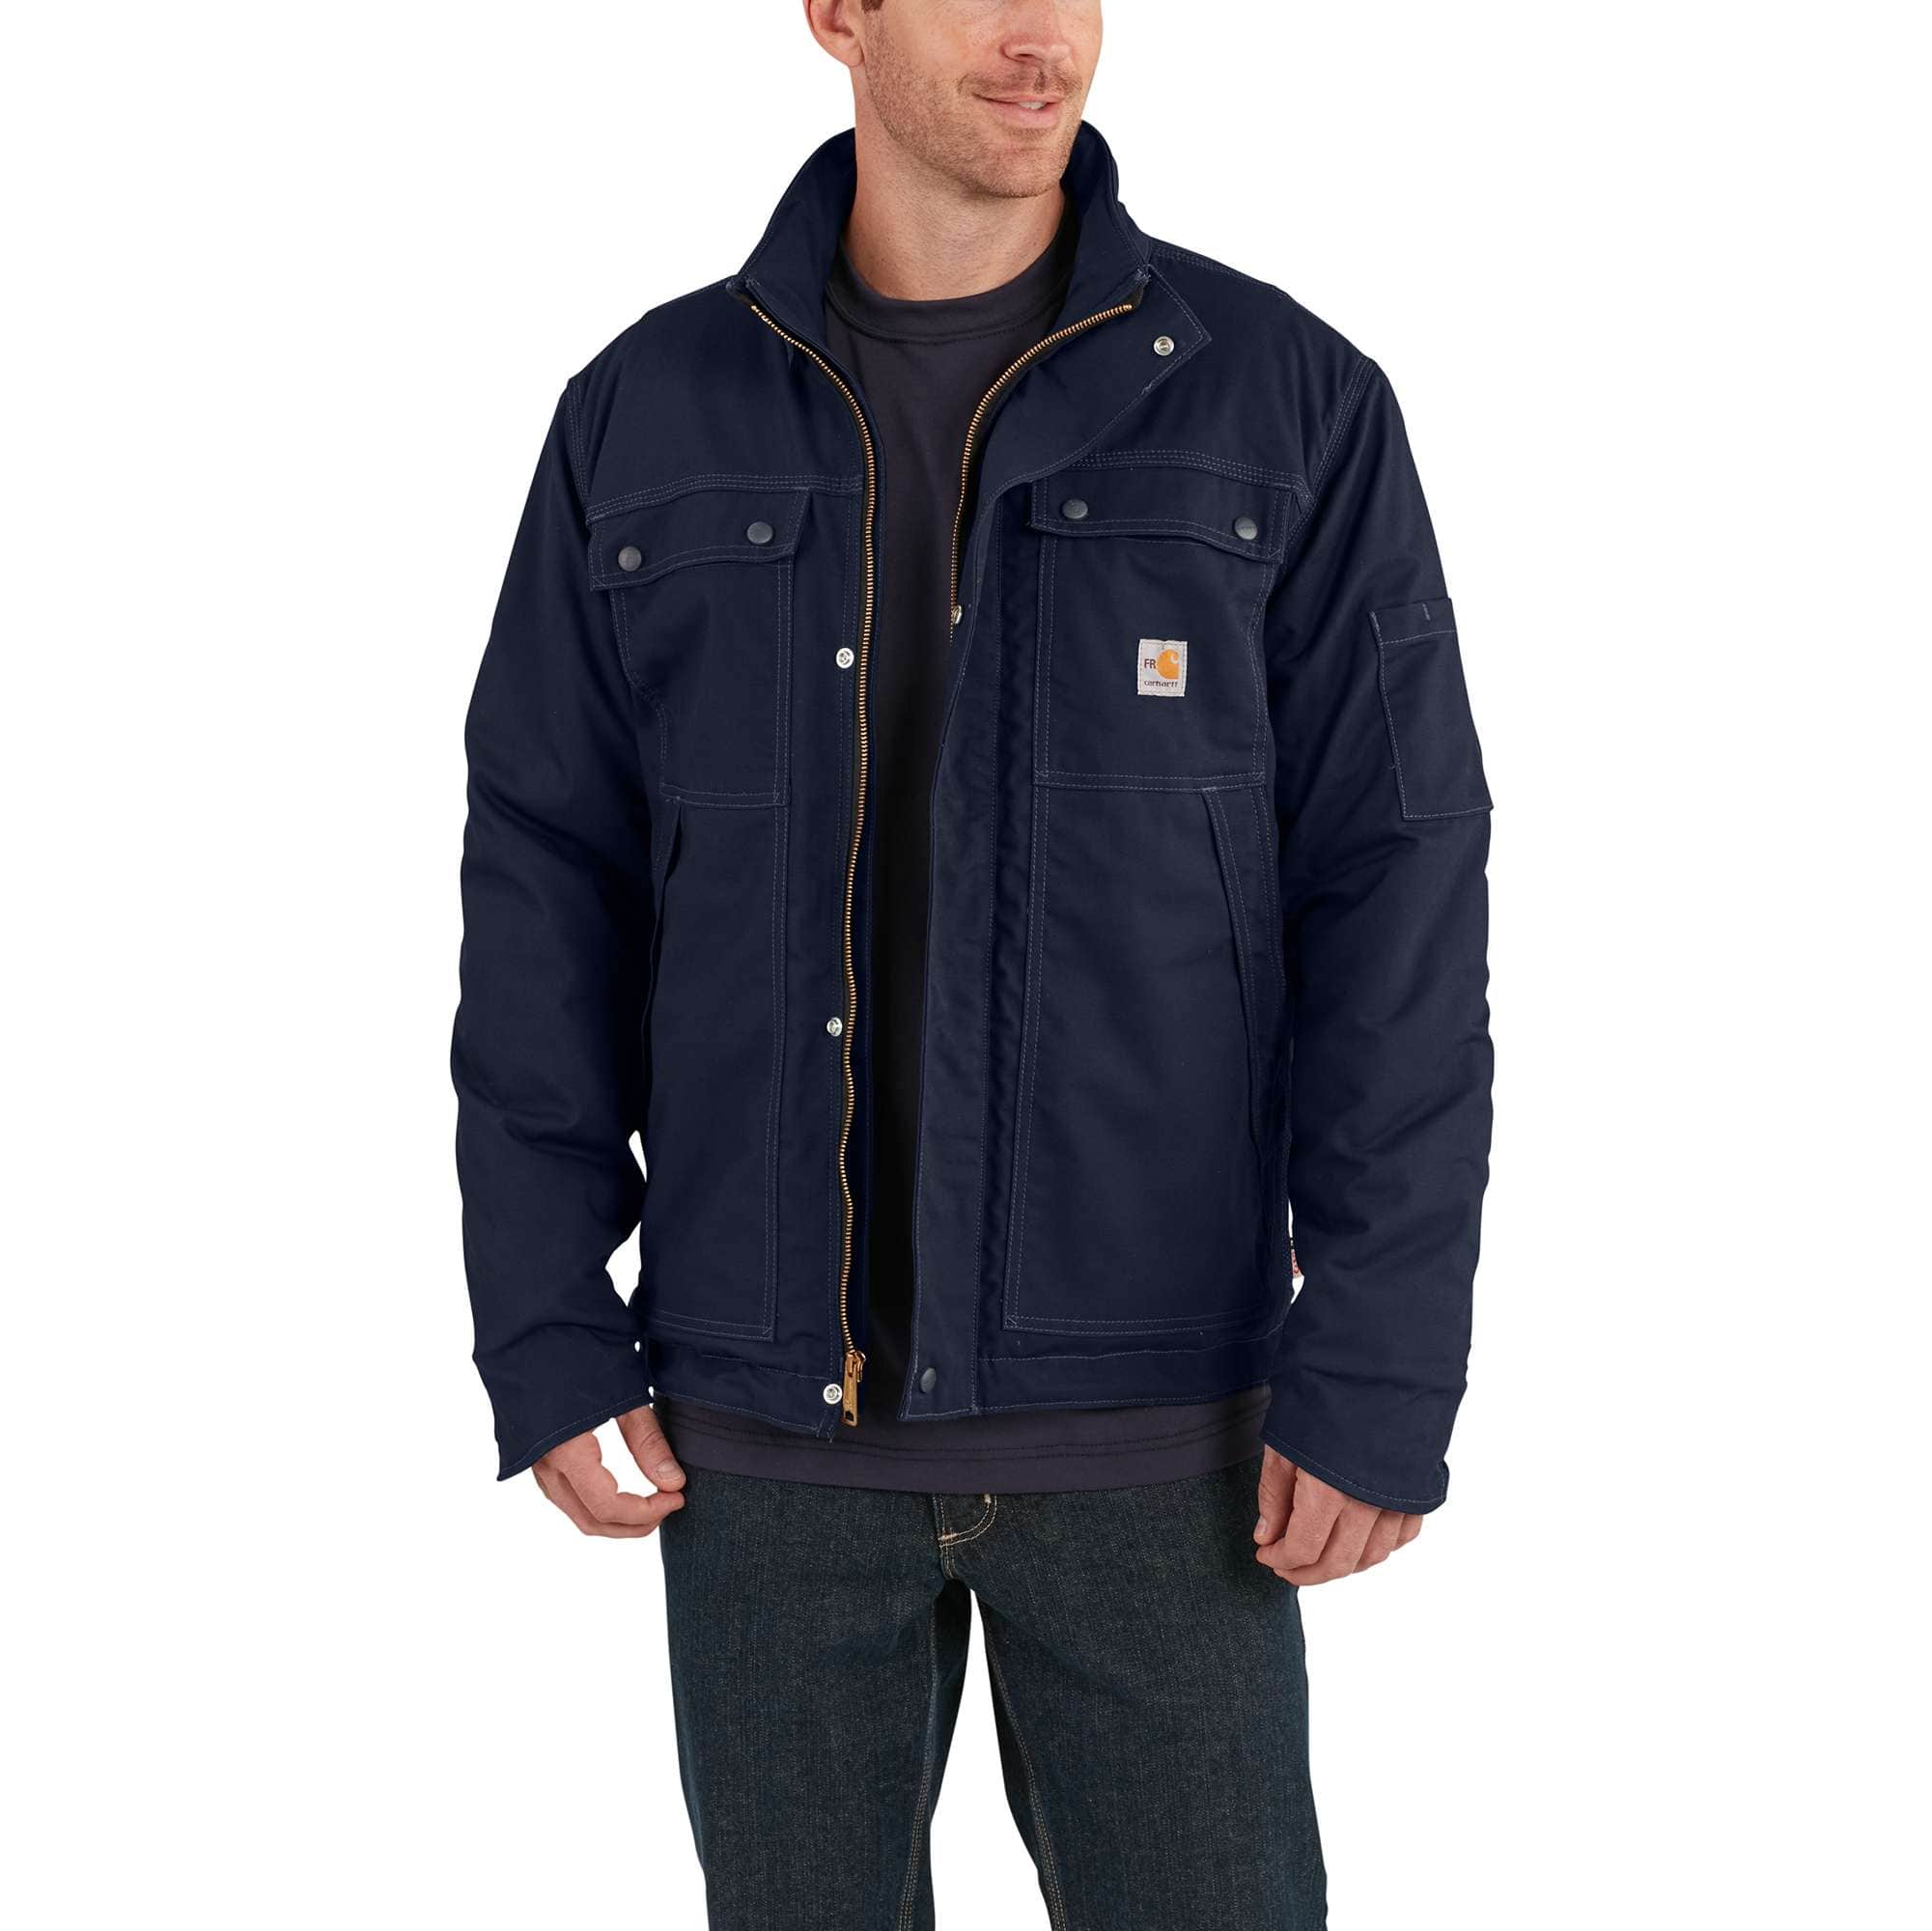 The warmest men's Carhartt jackets - 2023 update : r/Carhartt